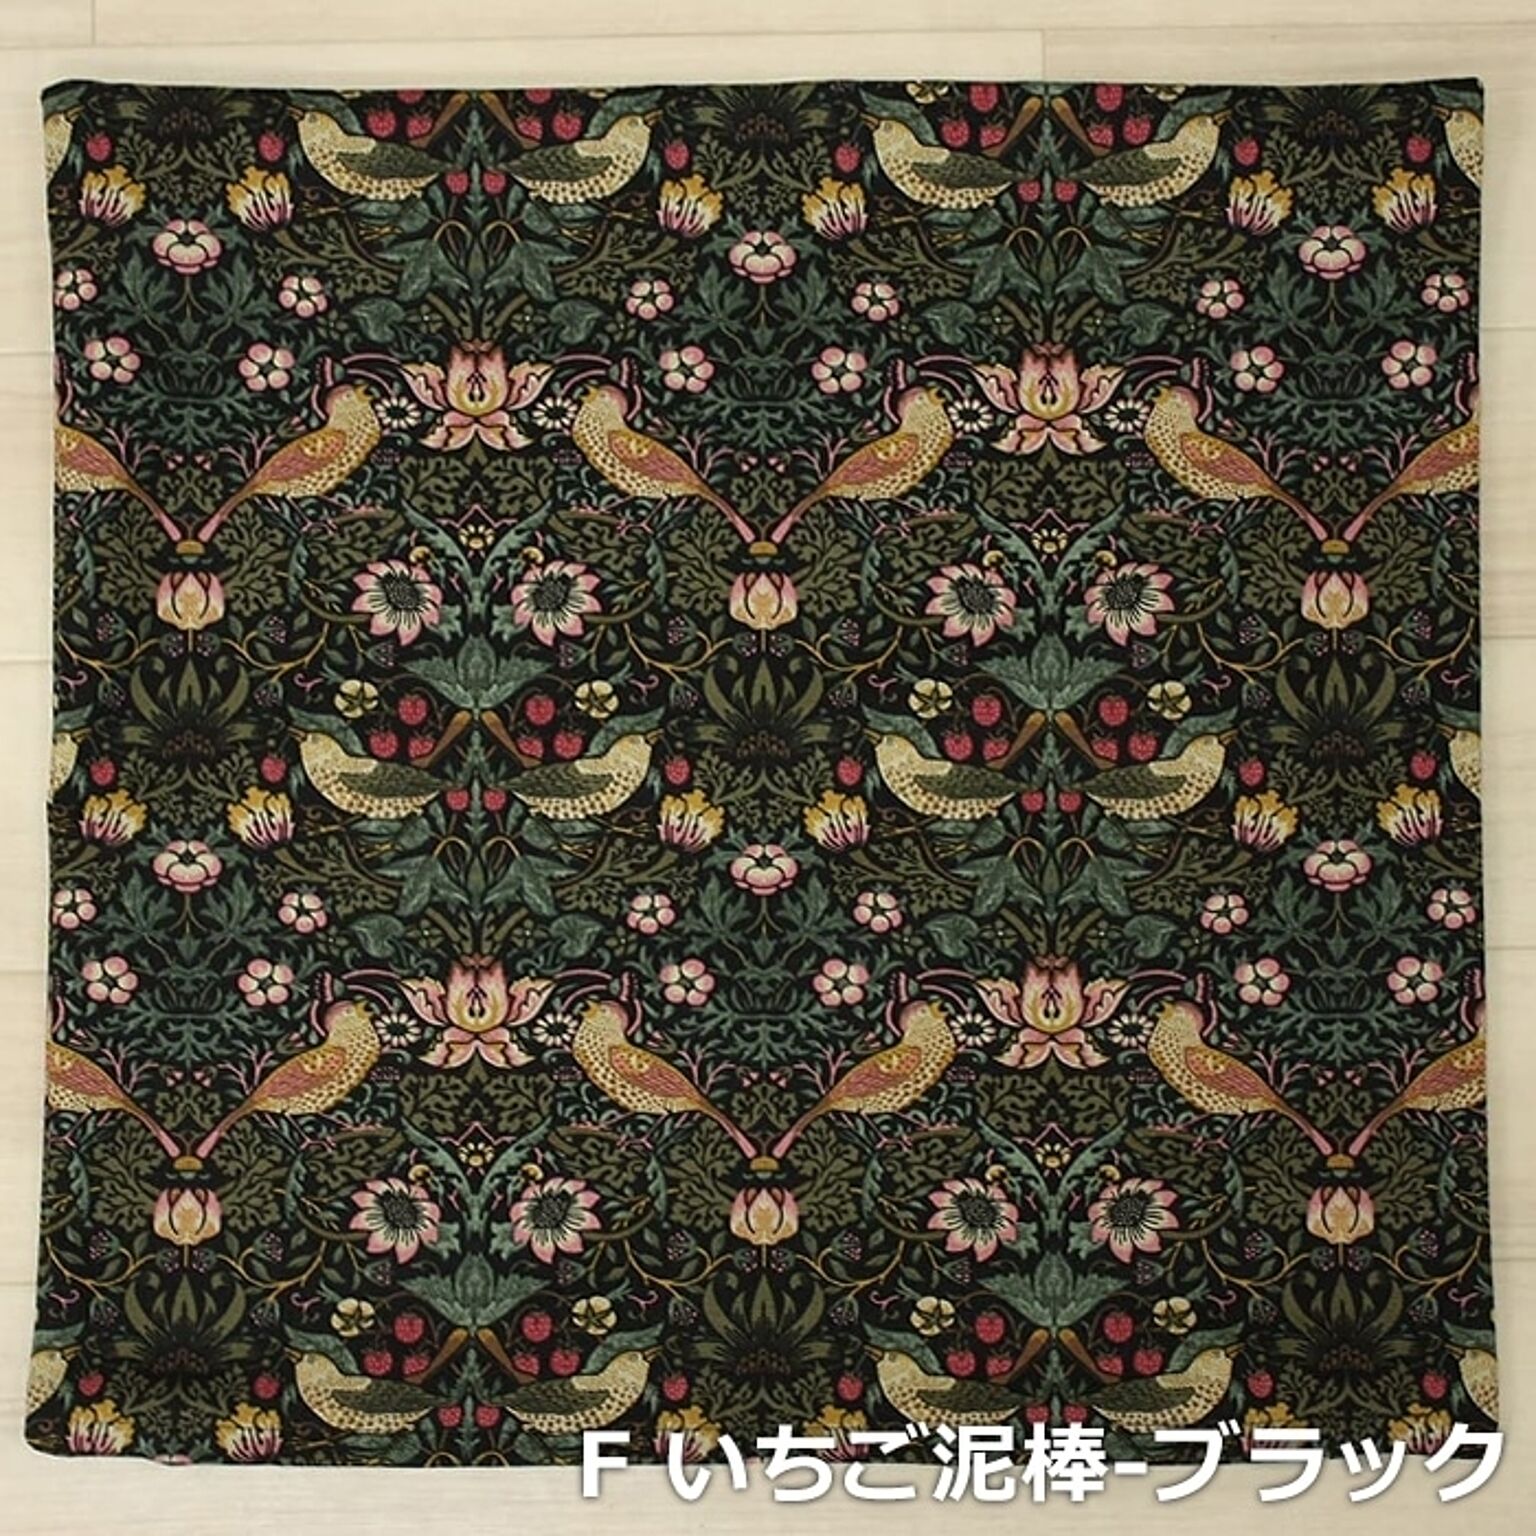 モリスデザイン 手作り クッションカバー 約45×45cm (Y) Morris morisu デザイン Fabric by BEST OF MORRIS